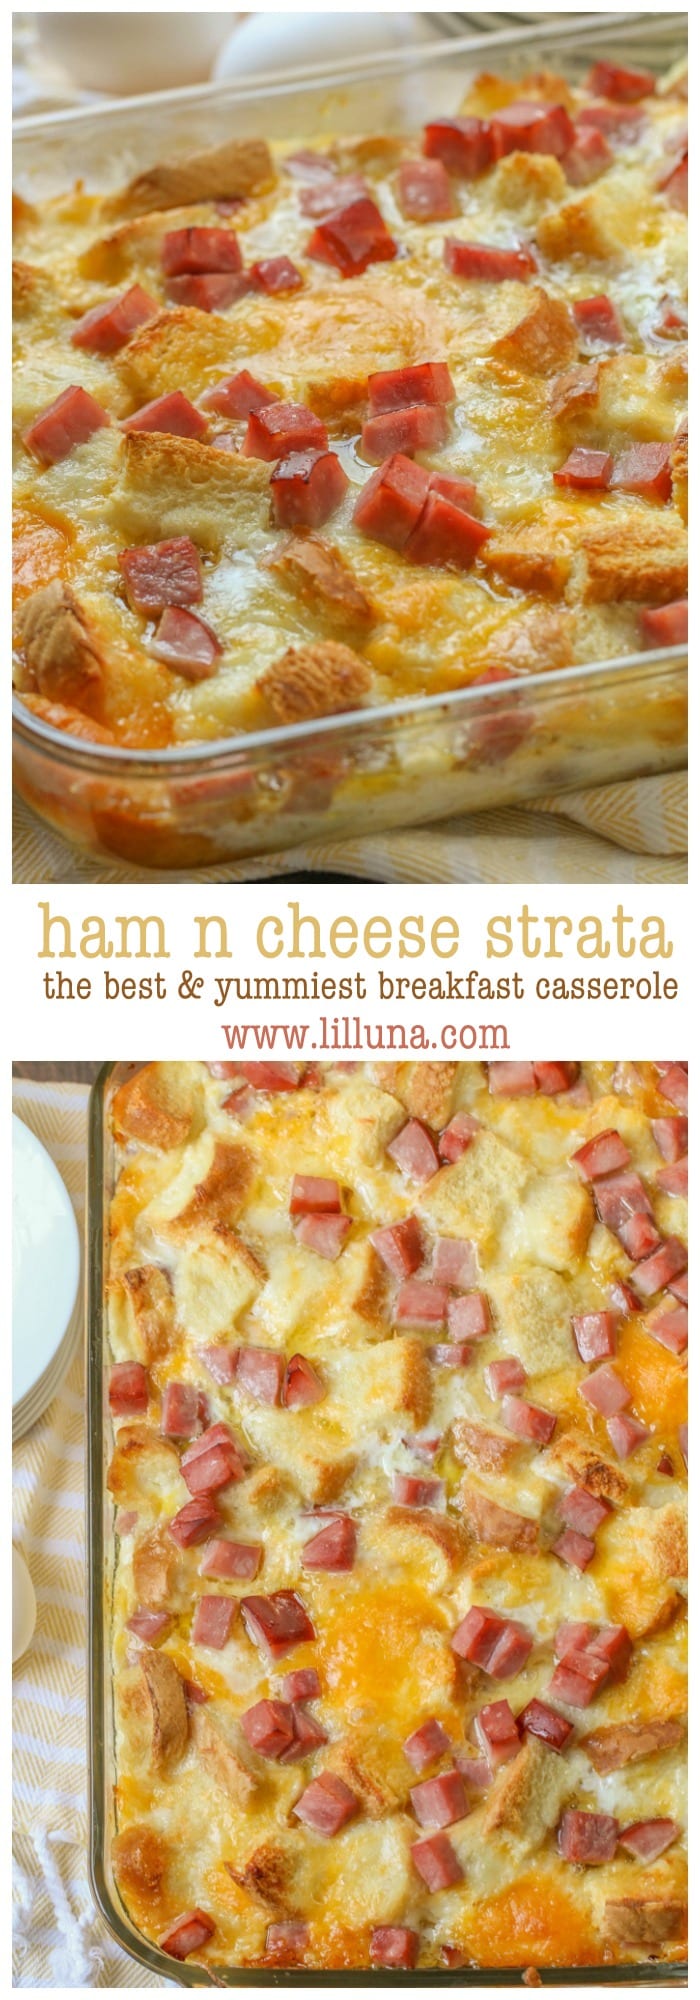 ham and cheese strata